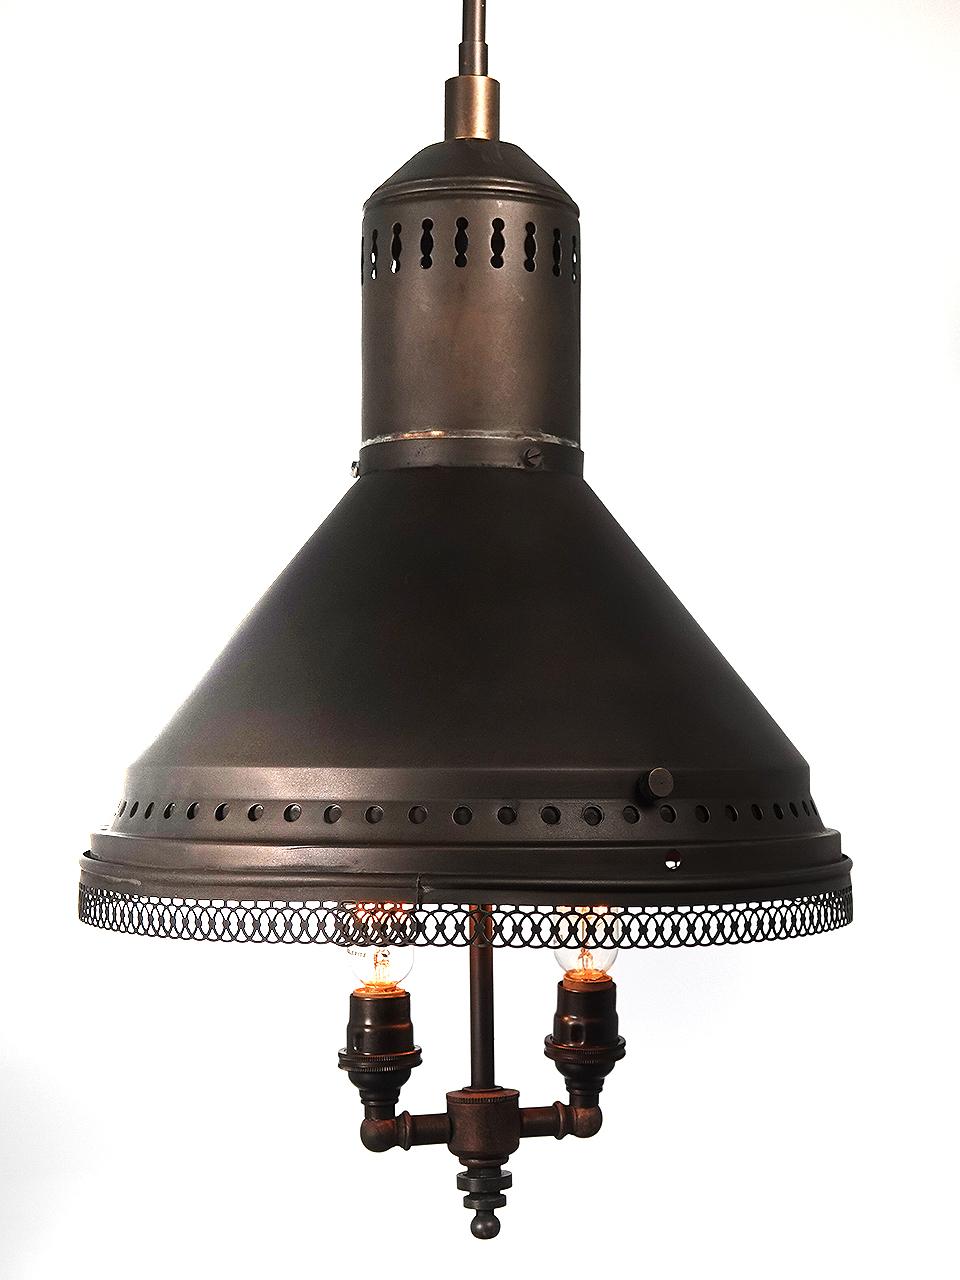 Nous adorons ces lampes réflecteurs à miroir et elles sont également très appréciées des collectionneurs. Cet exemple a un diamètre de 12 pouces avec 24 miroirs séparés coupés à la main et un bord inférieur filigrané. Il peut s'agir d'une lampe à